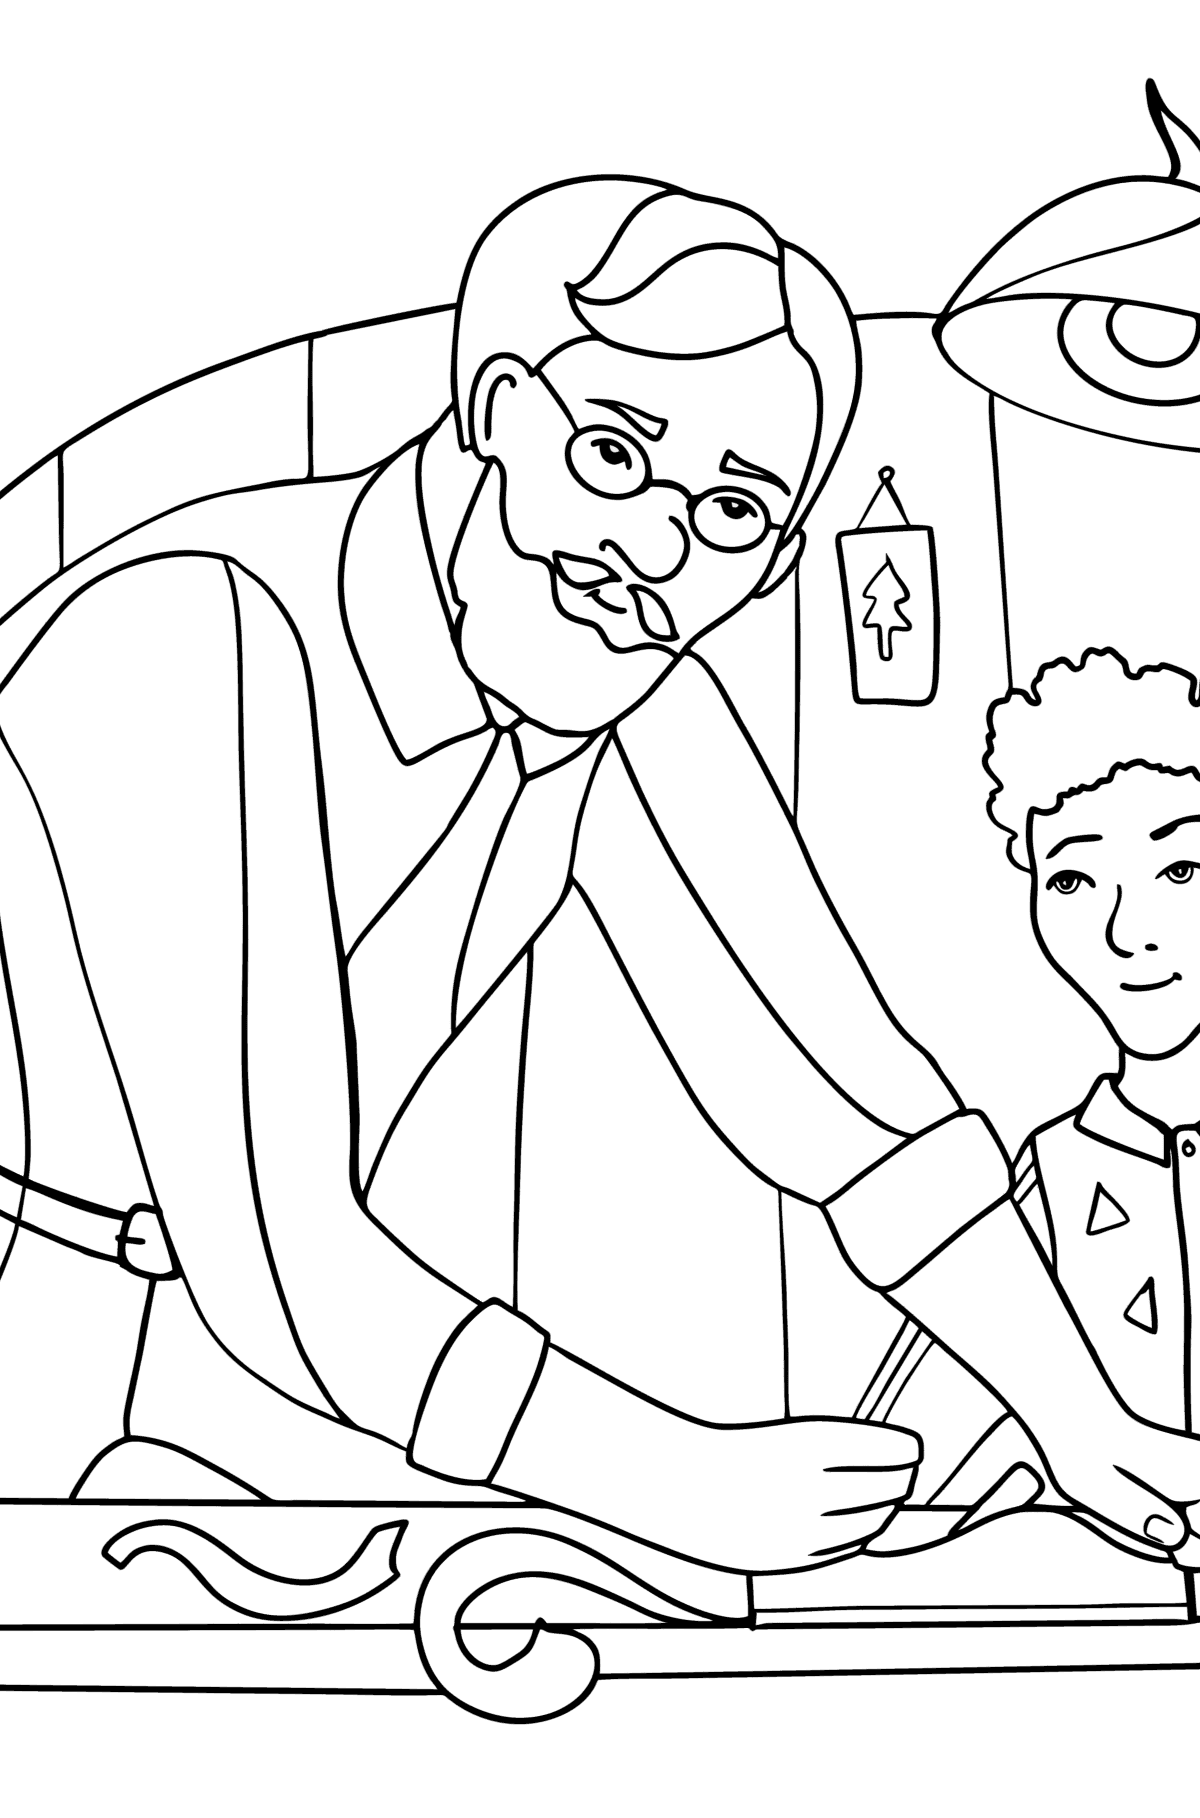 Dibujos Día de los Abuelos para colorear en Línea - Abuelo y nieto